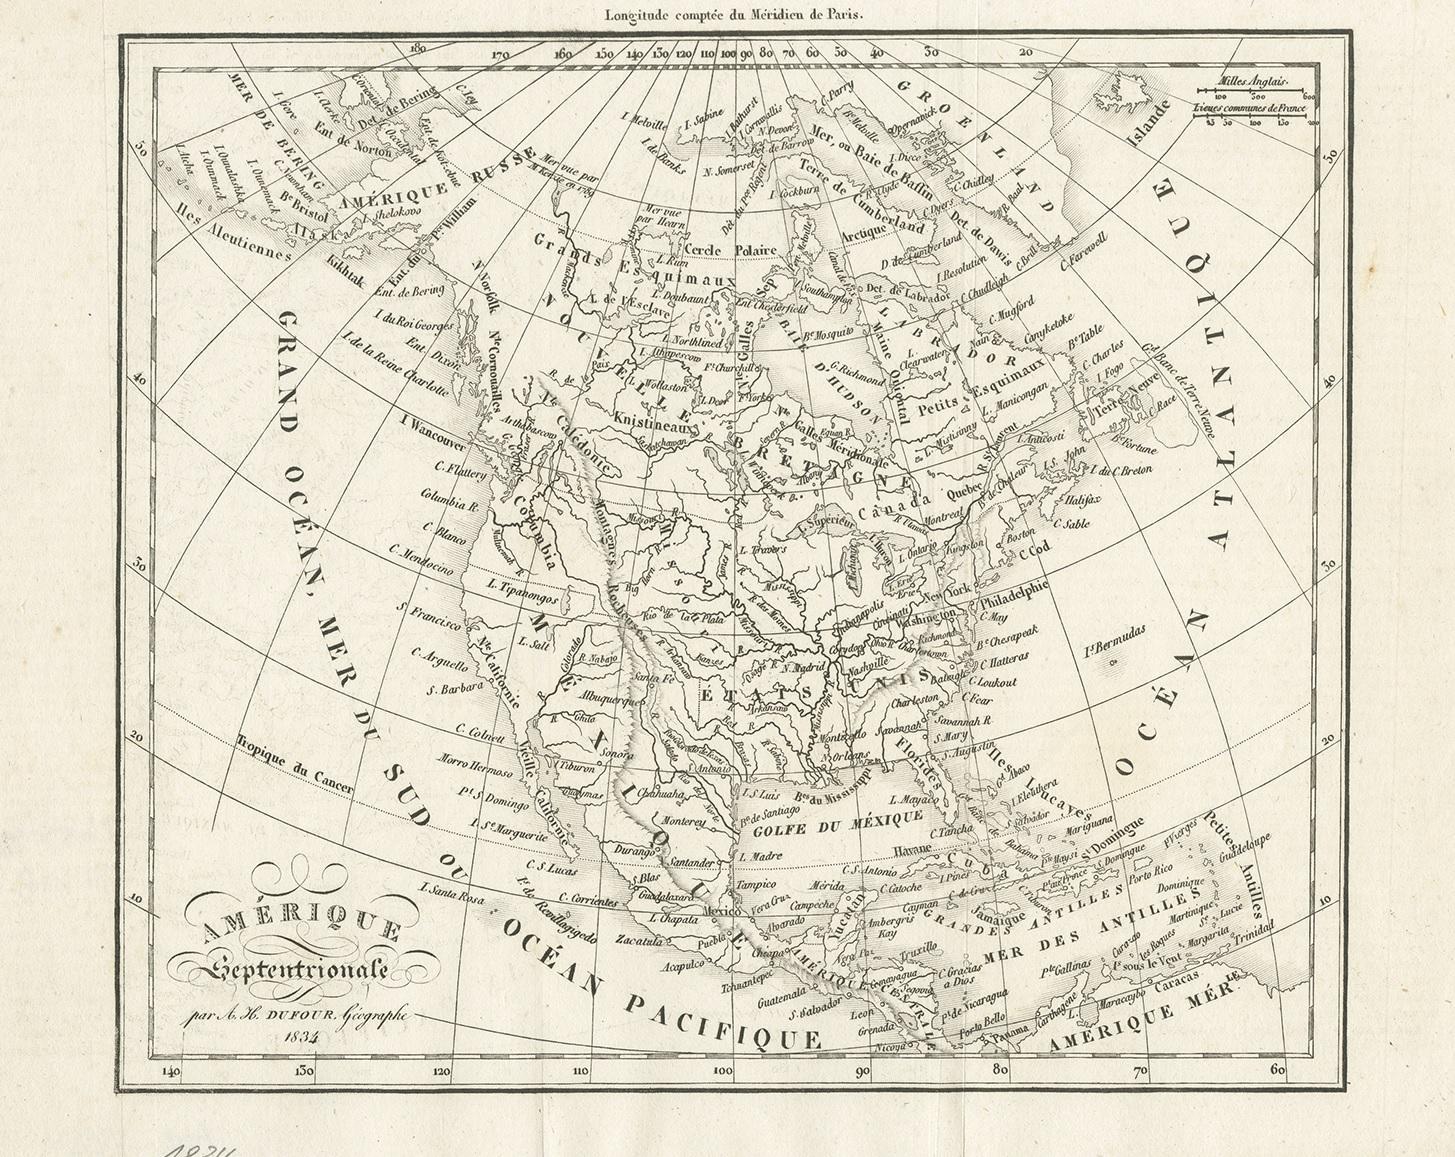 Antike Karte mit dem Titel 'Amérique Septentrionale'. Ungewöhnliche Karte von Nordamerika. Veröffentlicht von oder nach A.H. Dufour, um 1834. Quelle unbekannt, muss noch ermittelt werden.